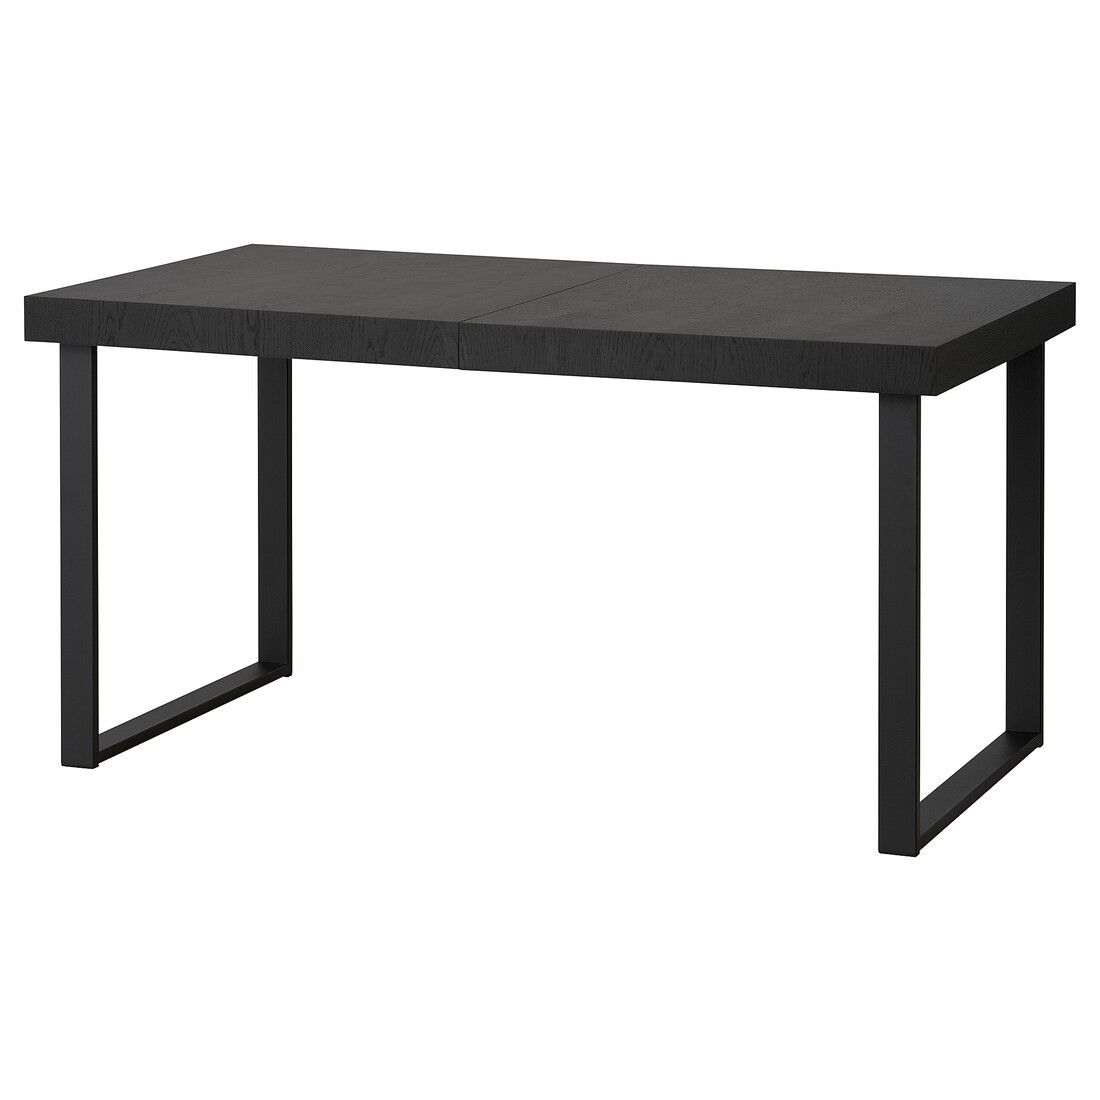 TARSELE ТАРСЕЛЕ Розсувний стіл, чорний шпон / чорний, 150/200x80 cм